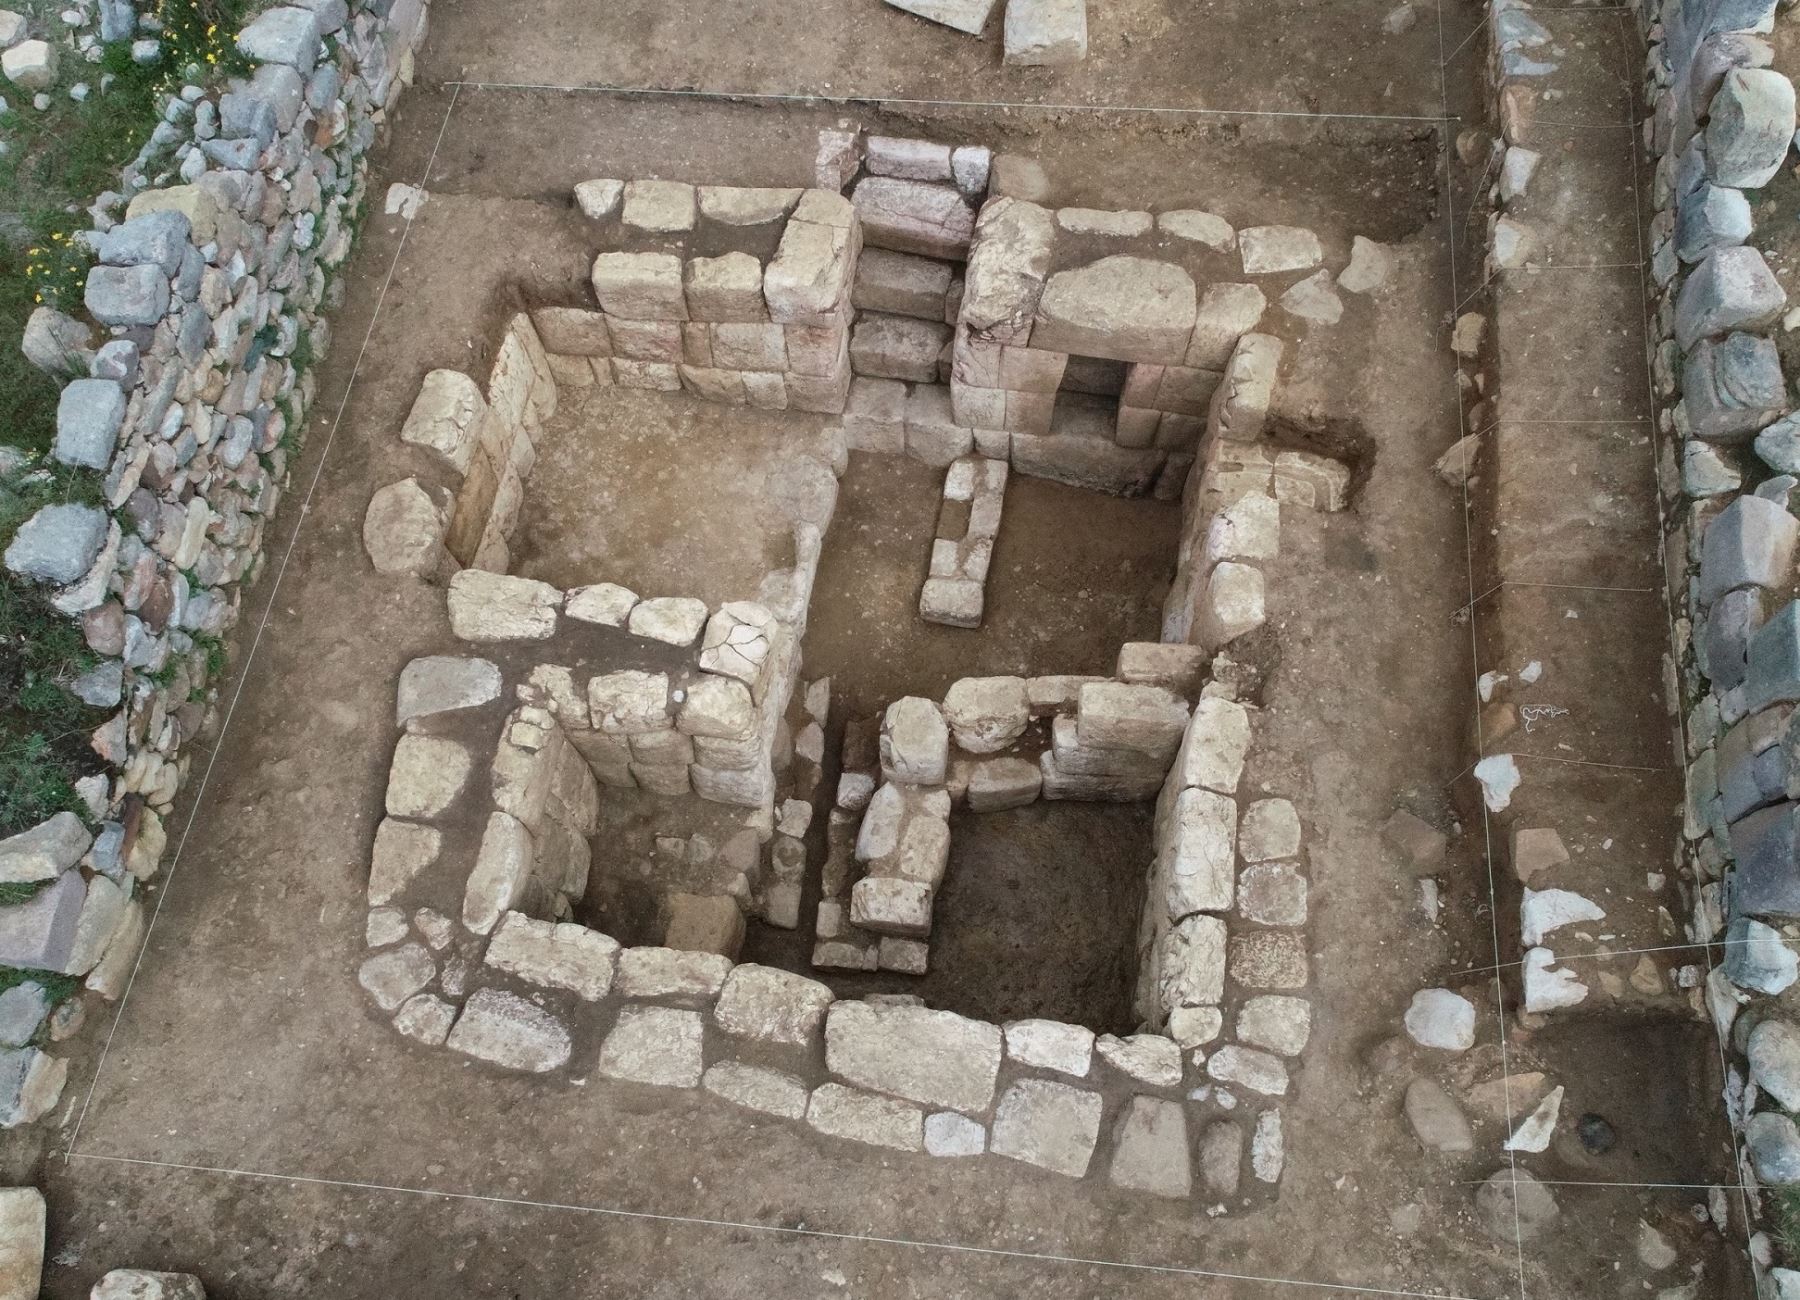 Arqueólogos peruanos hallaron un segundo baño del Inca en la zona arqueológica de Huánuco Pampa, región Huánuco, informó el Ministerio de Cultura.